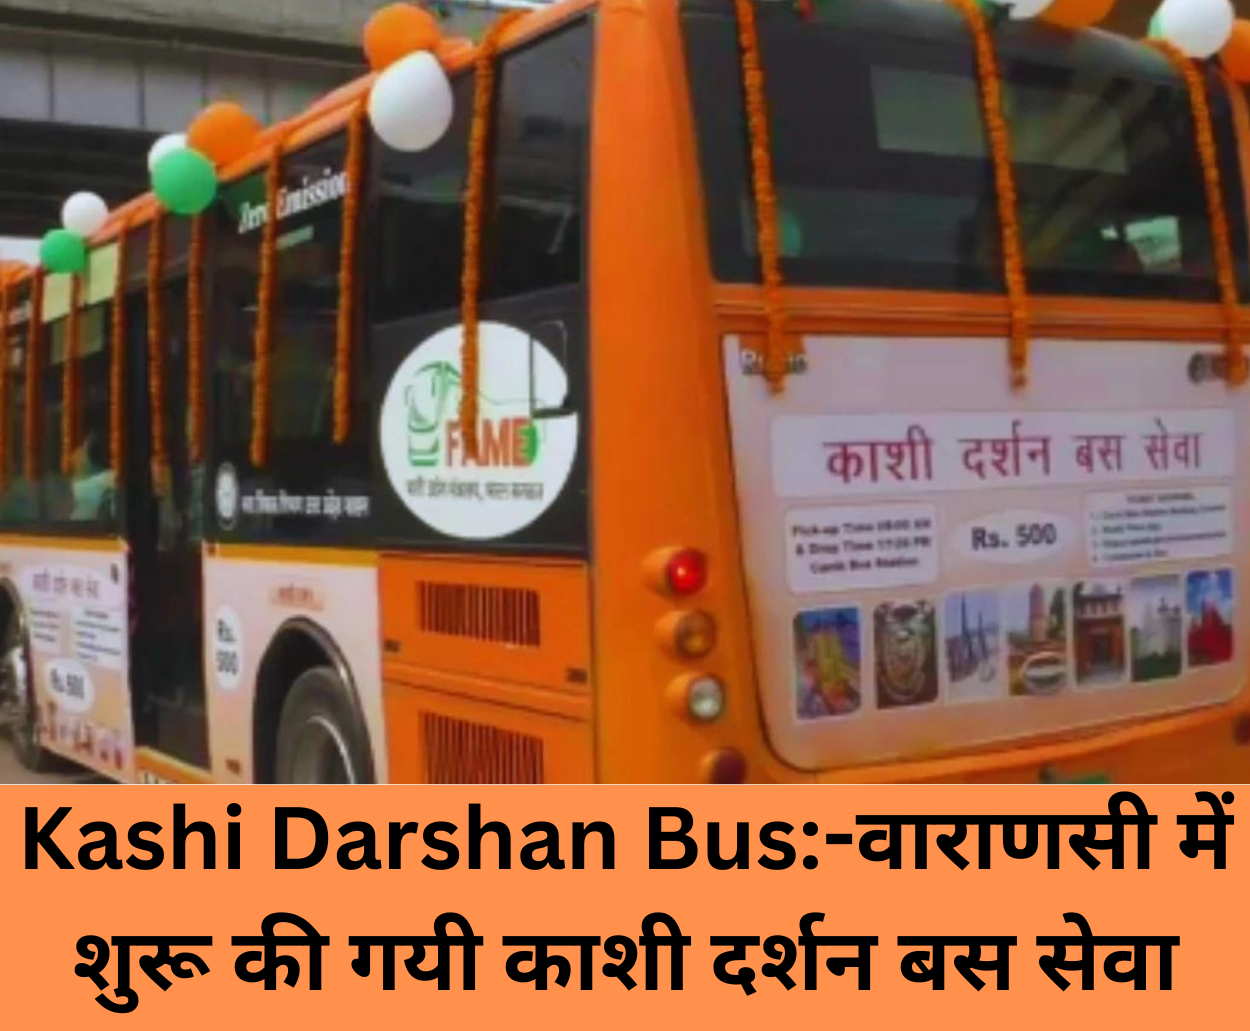 Read more about the article Kashi Darshan Bus:-वाराणसी में शुरू की गयी काशी दर्शन बस सेवा